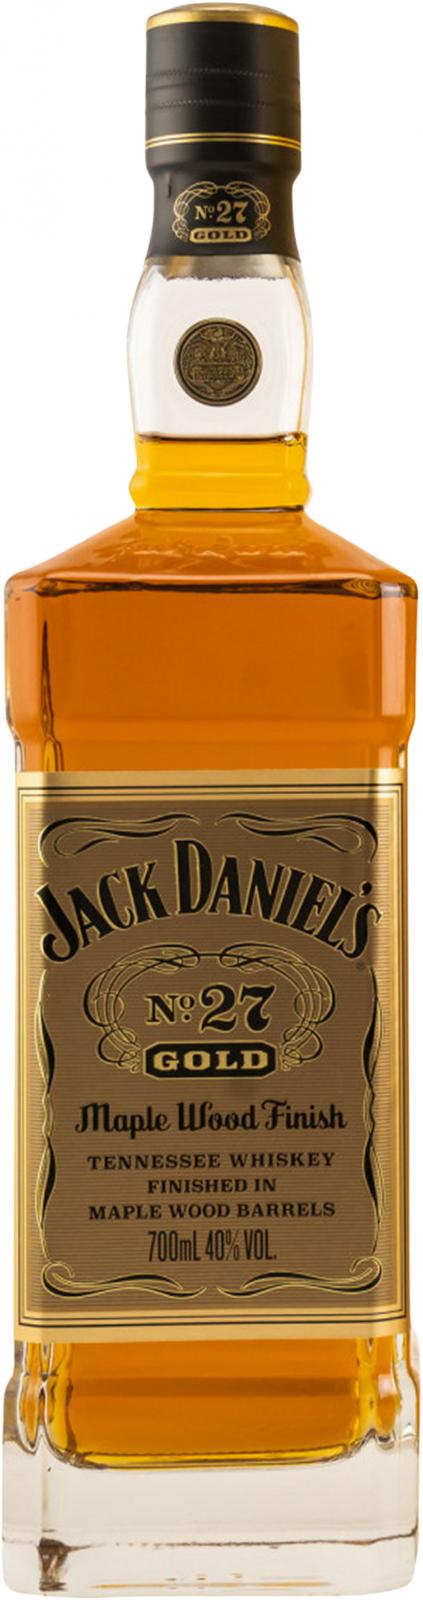 Jack Daniel’s No27